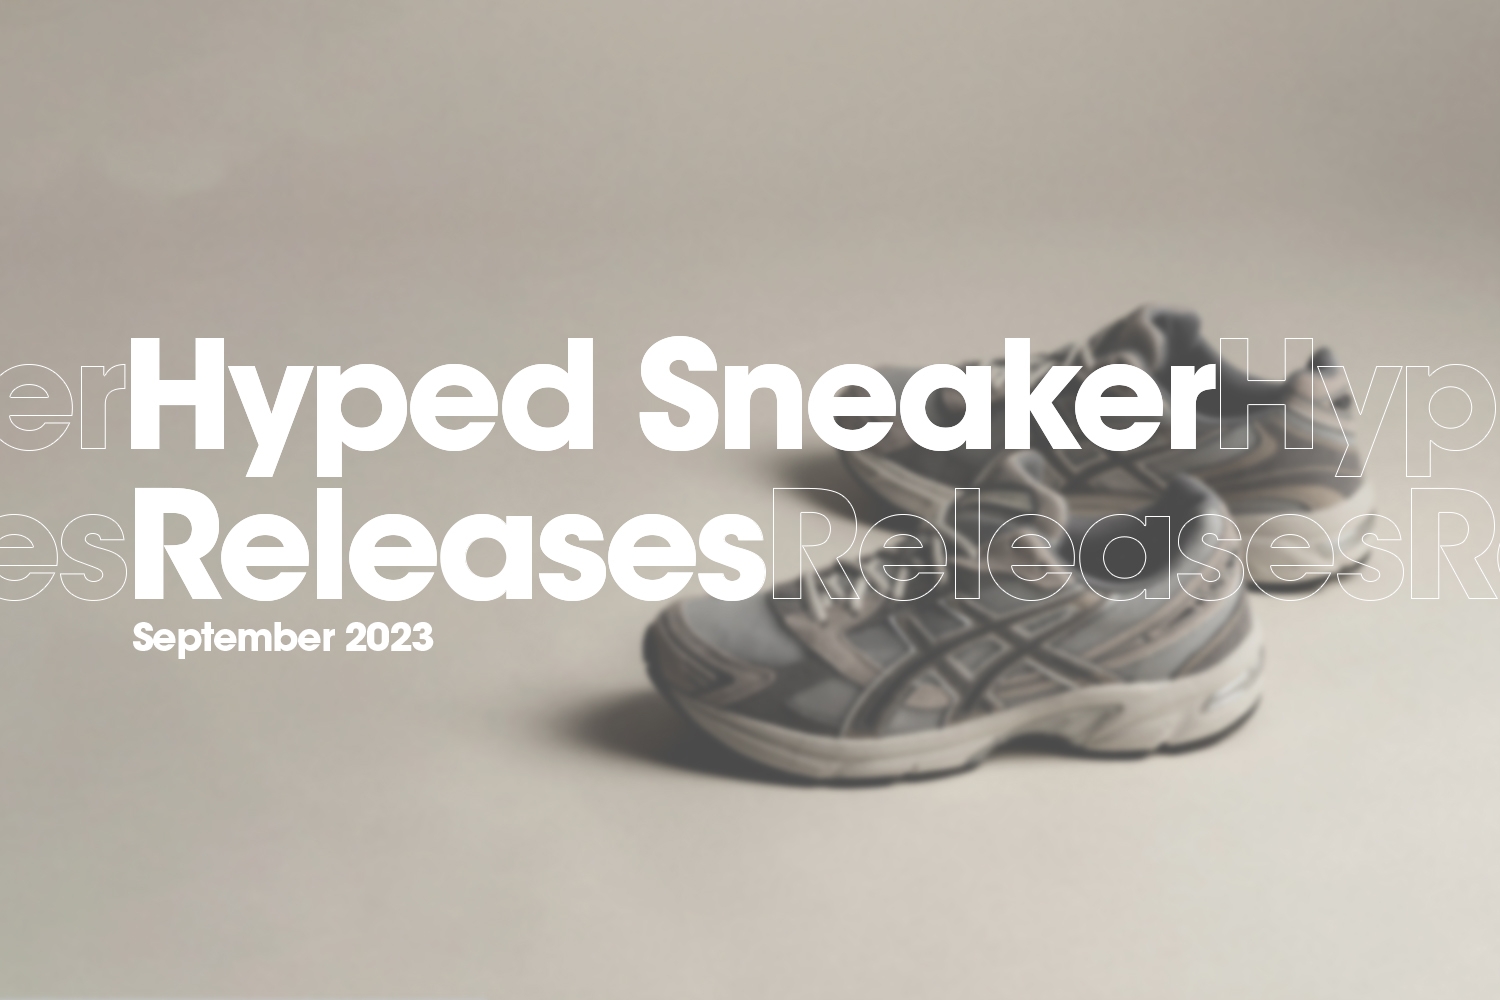 Die hyped Sneaker Releases von September 2023